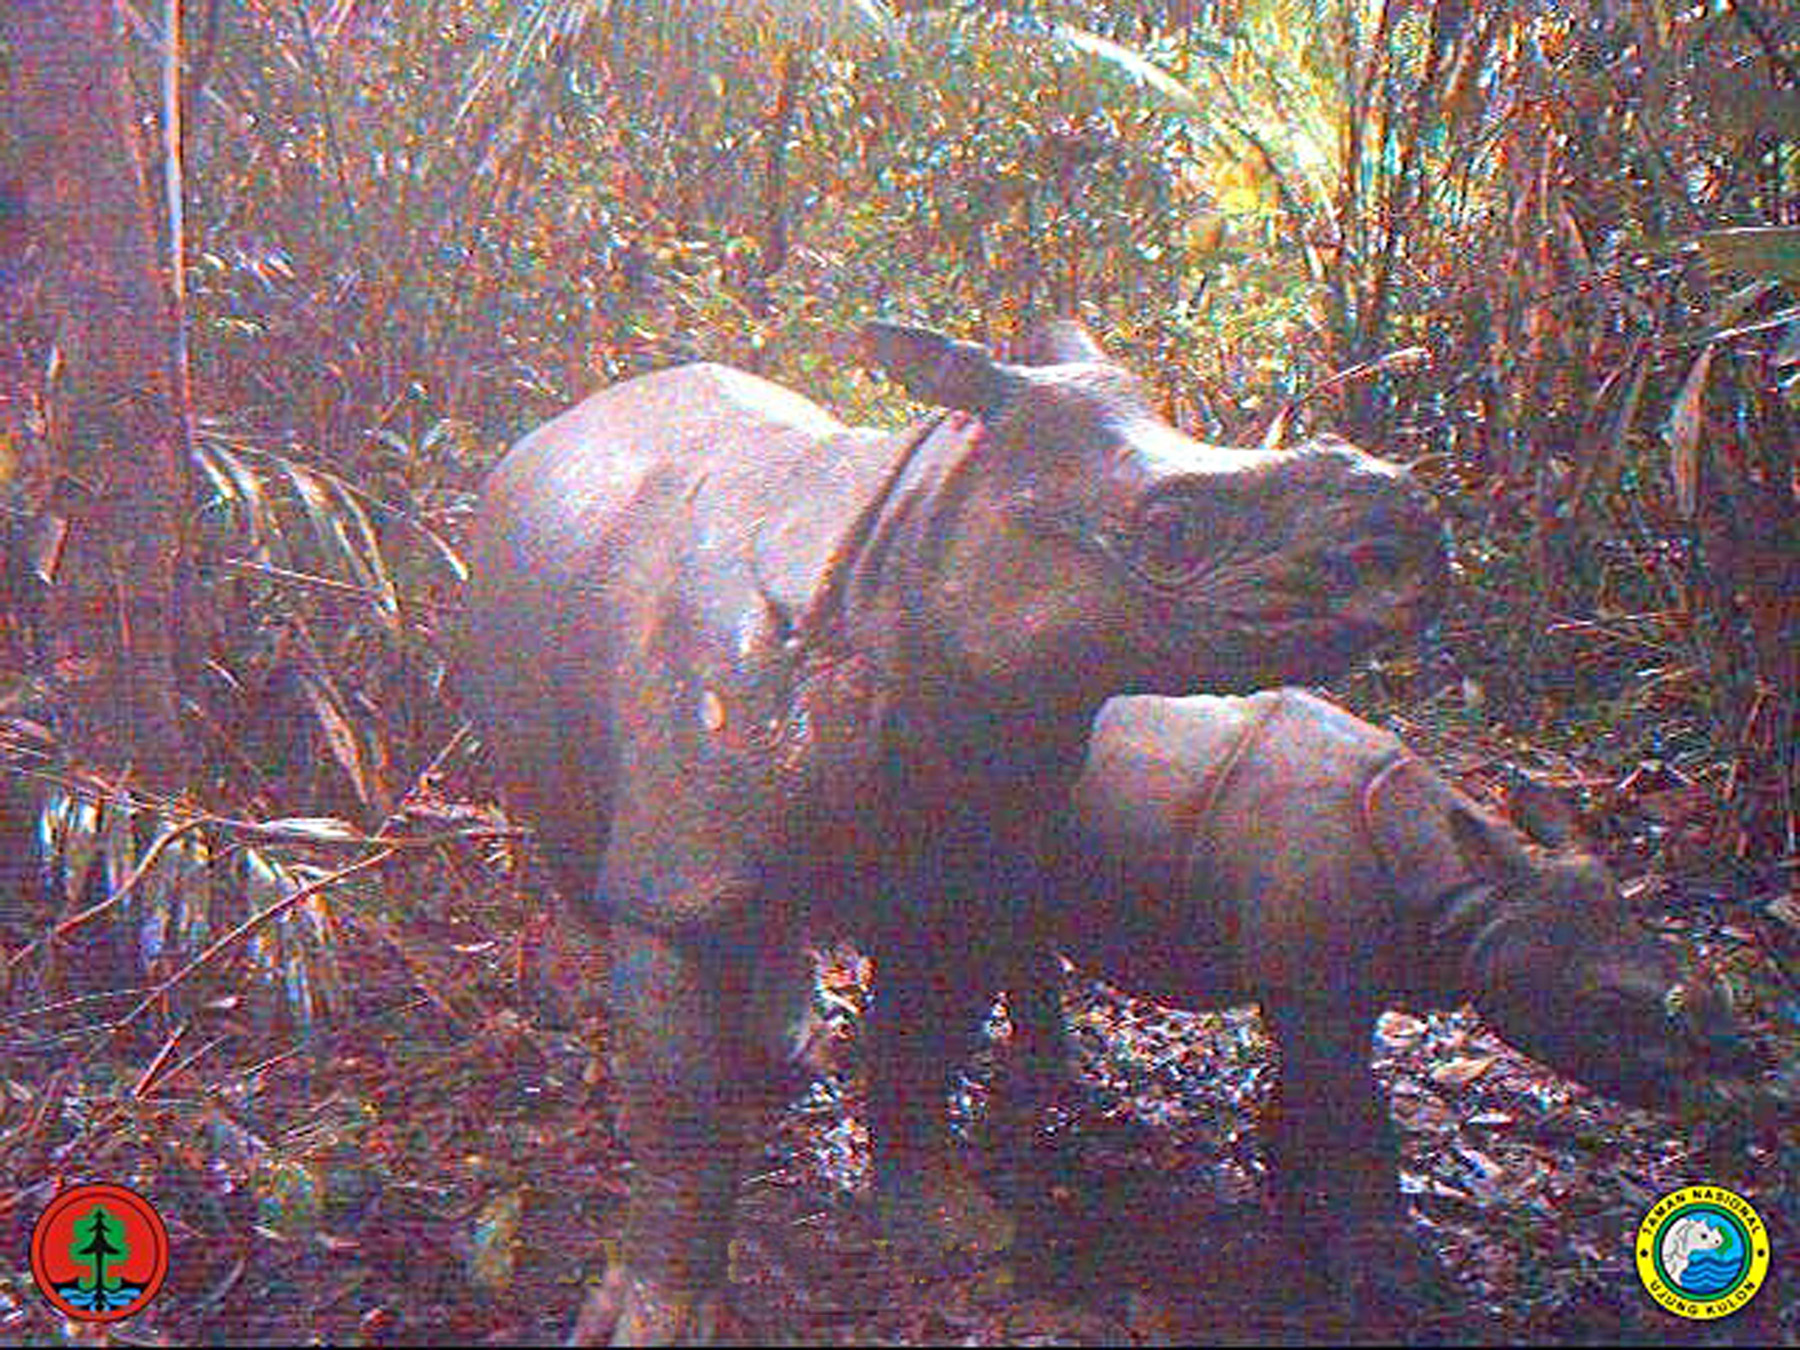 javan rhinoceros range